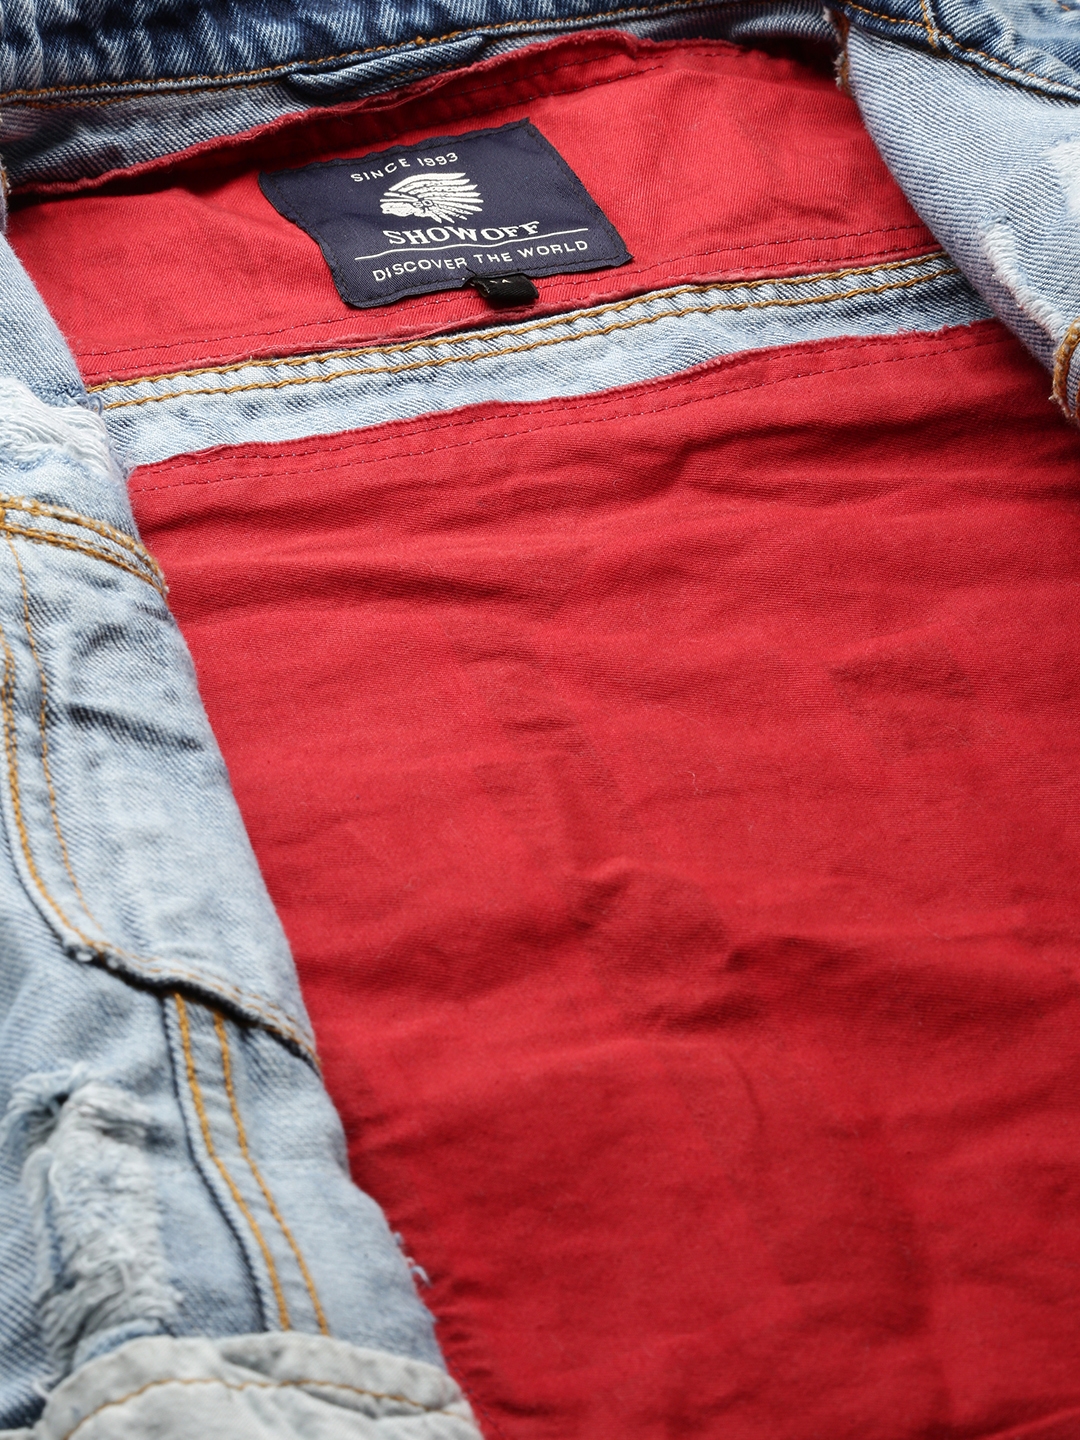 Men's Blue Cotton Solid Denim Jackets